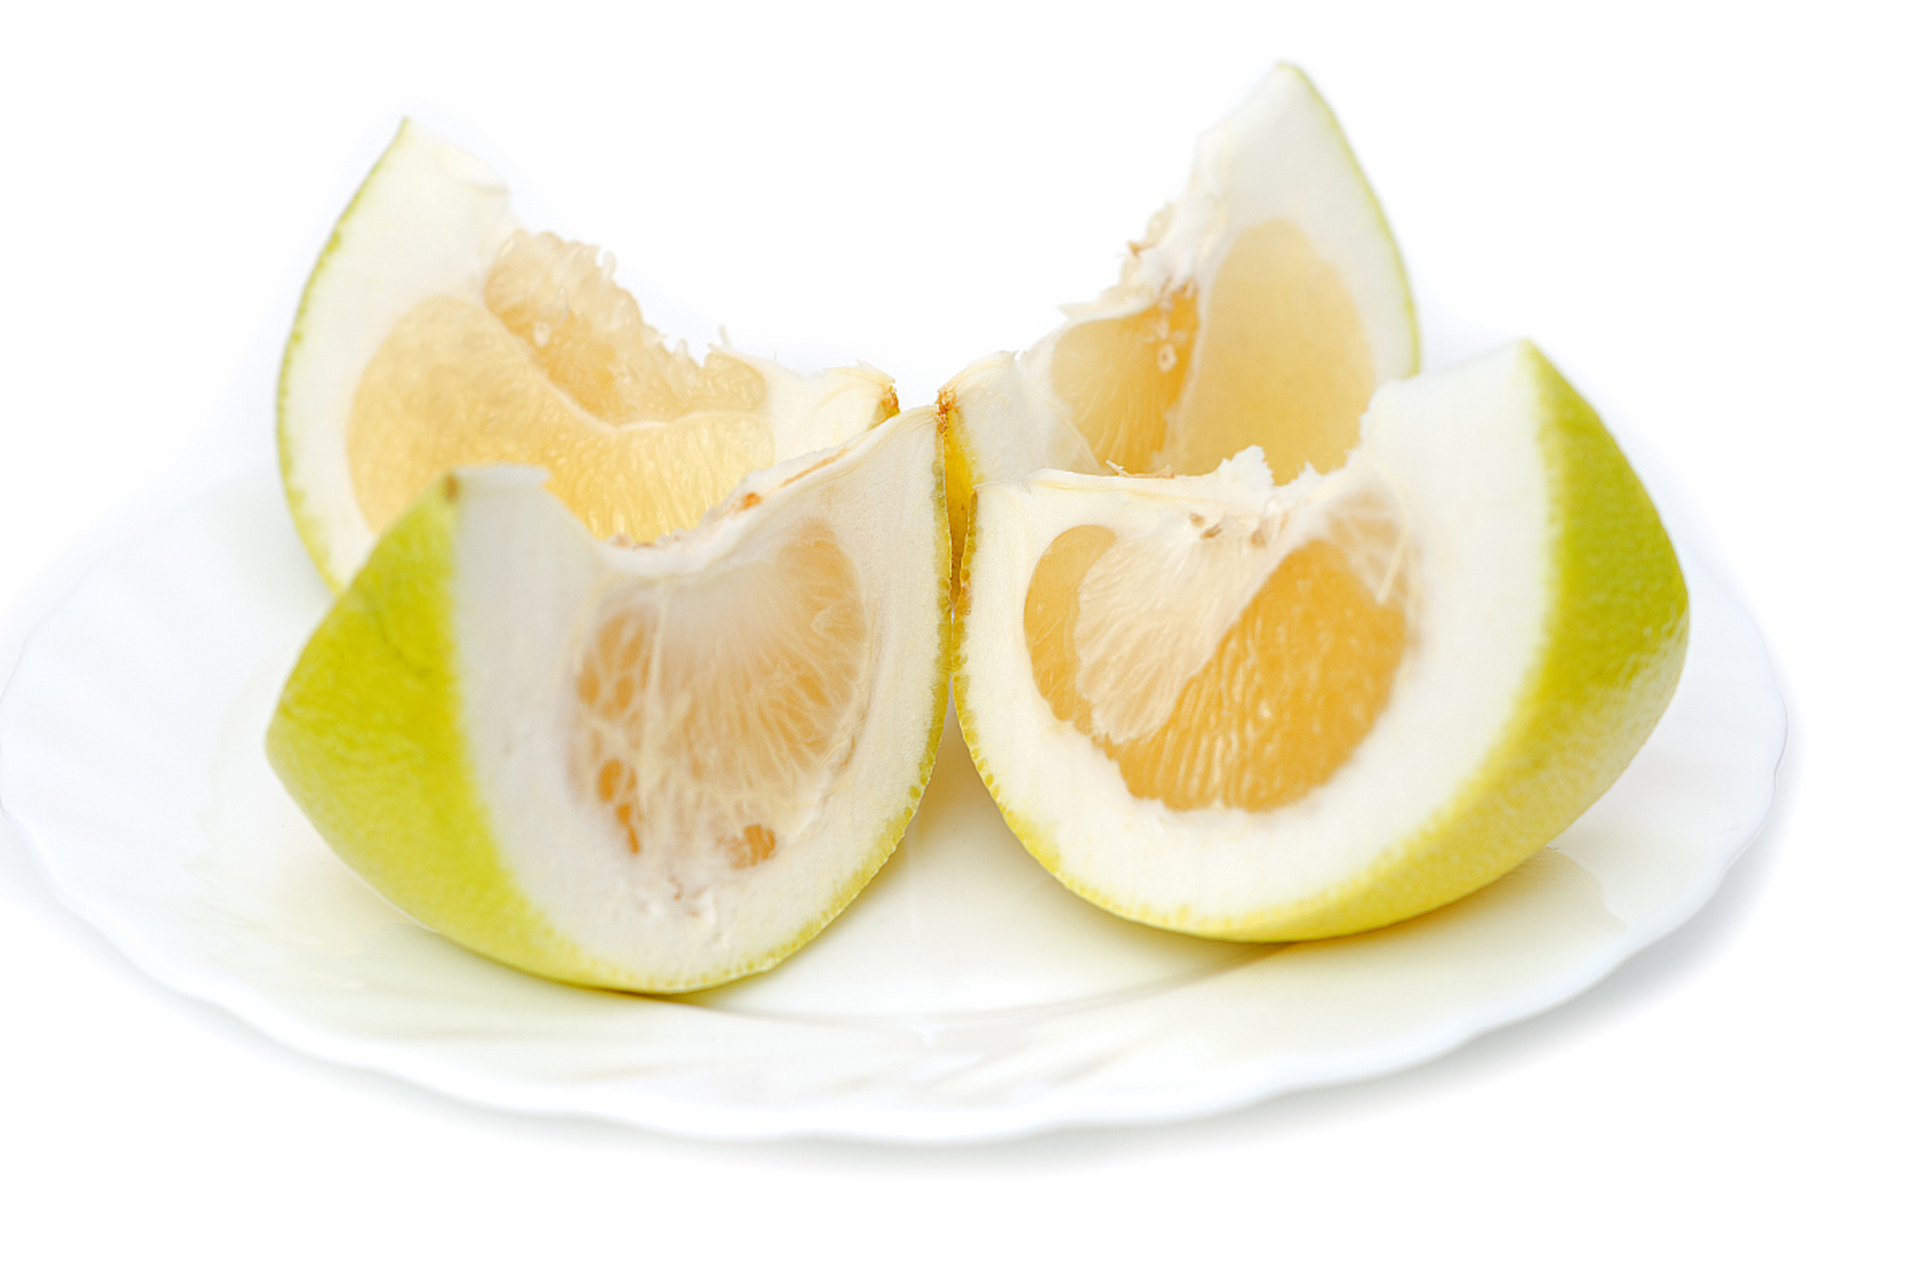 吃白柚对人体有什么好处呢?